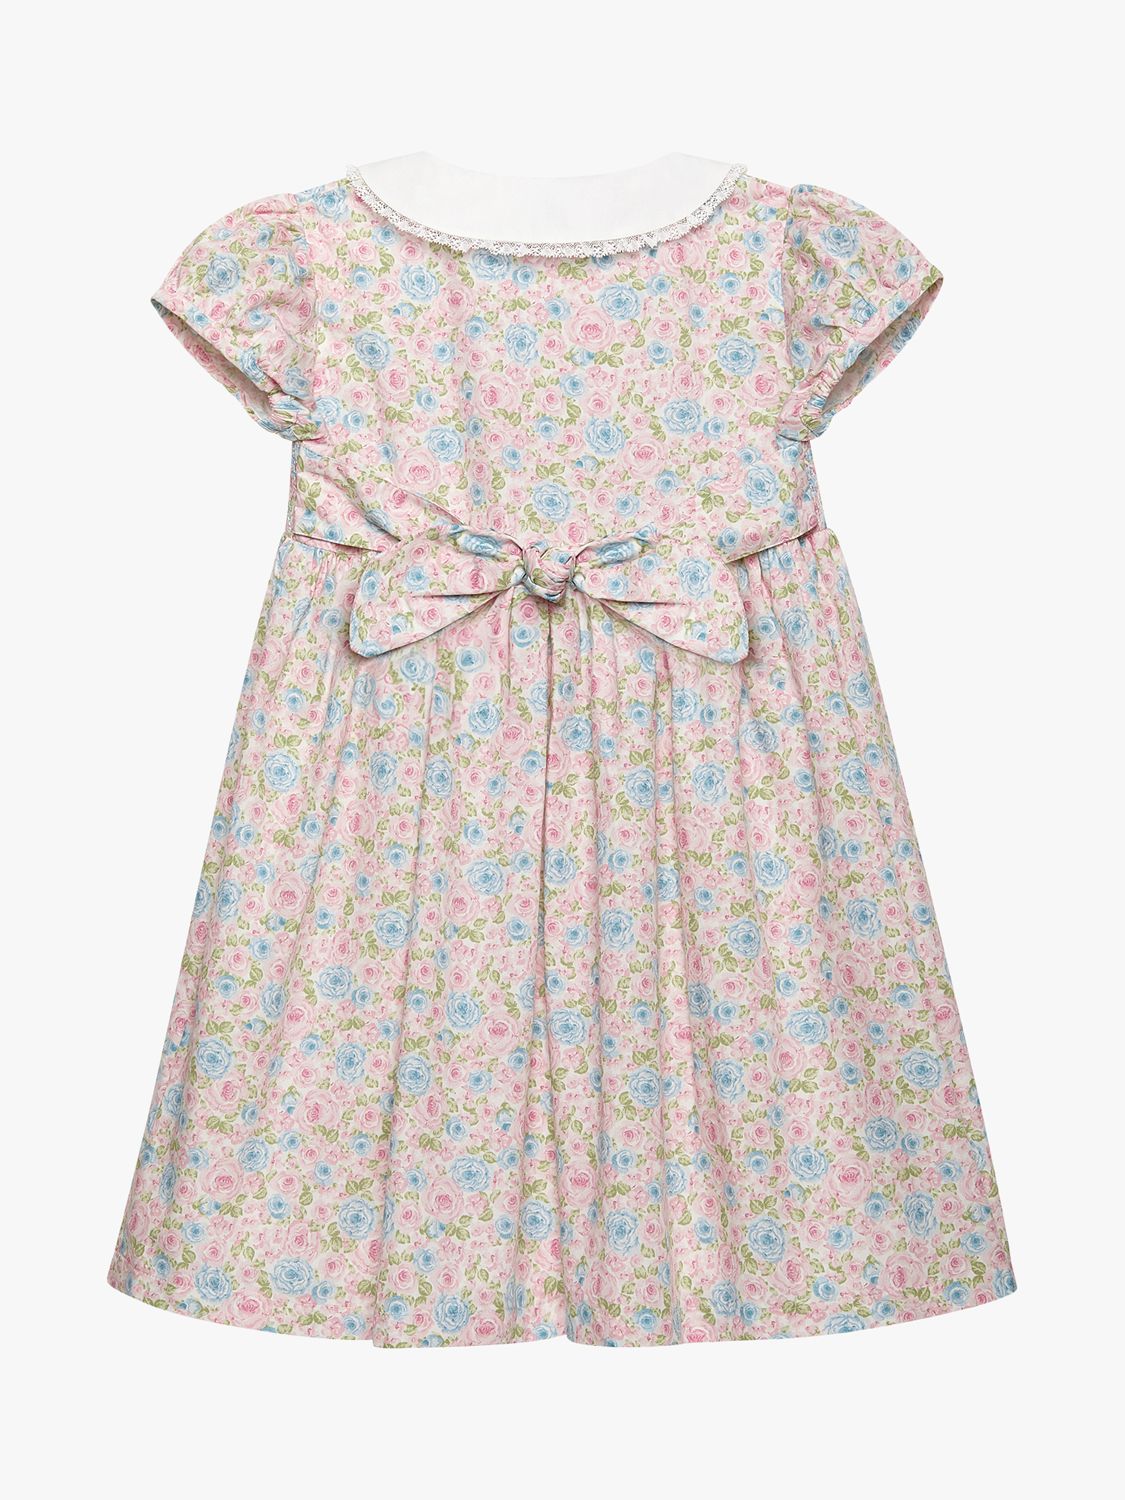 Buy Trotters Kids' Alice Floral Smocked Dress, Pink/Multi Online at johnlewis.com